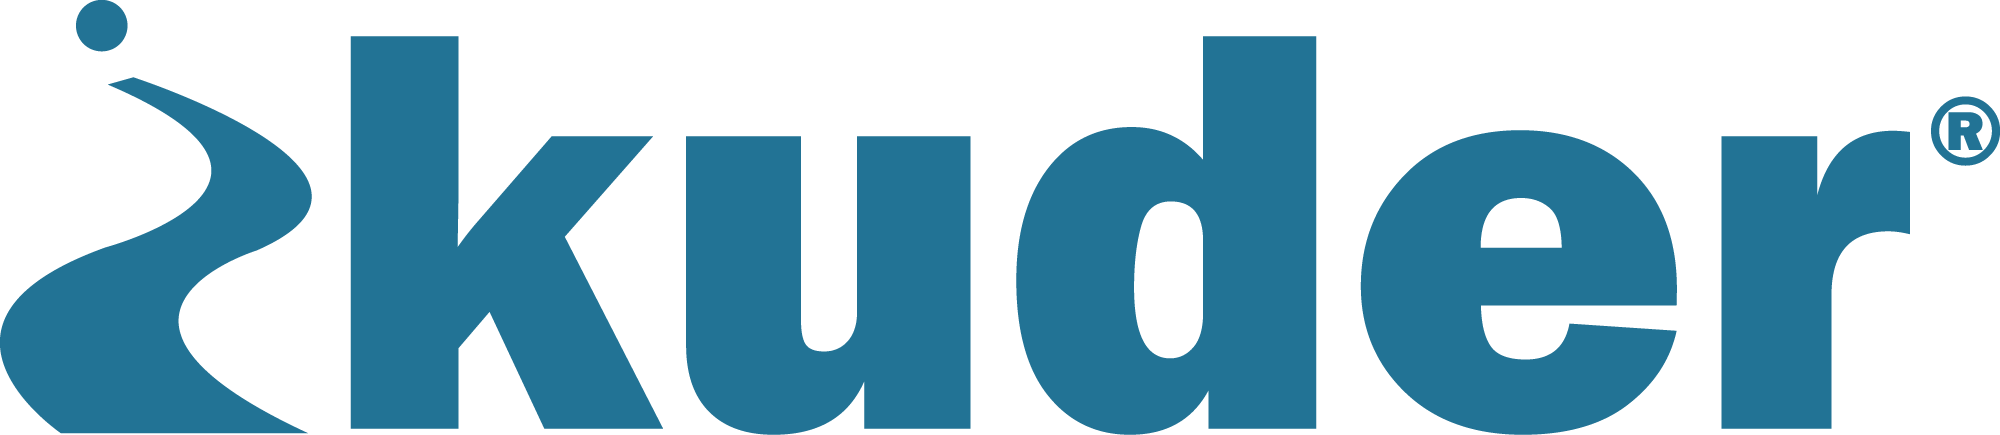 Kuder, Inc. logo